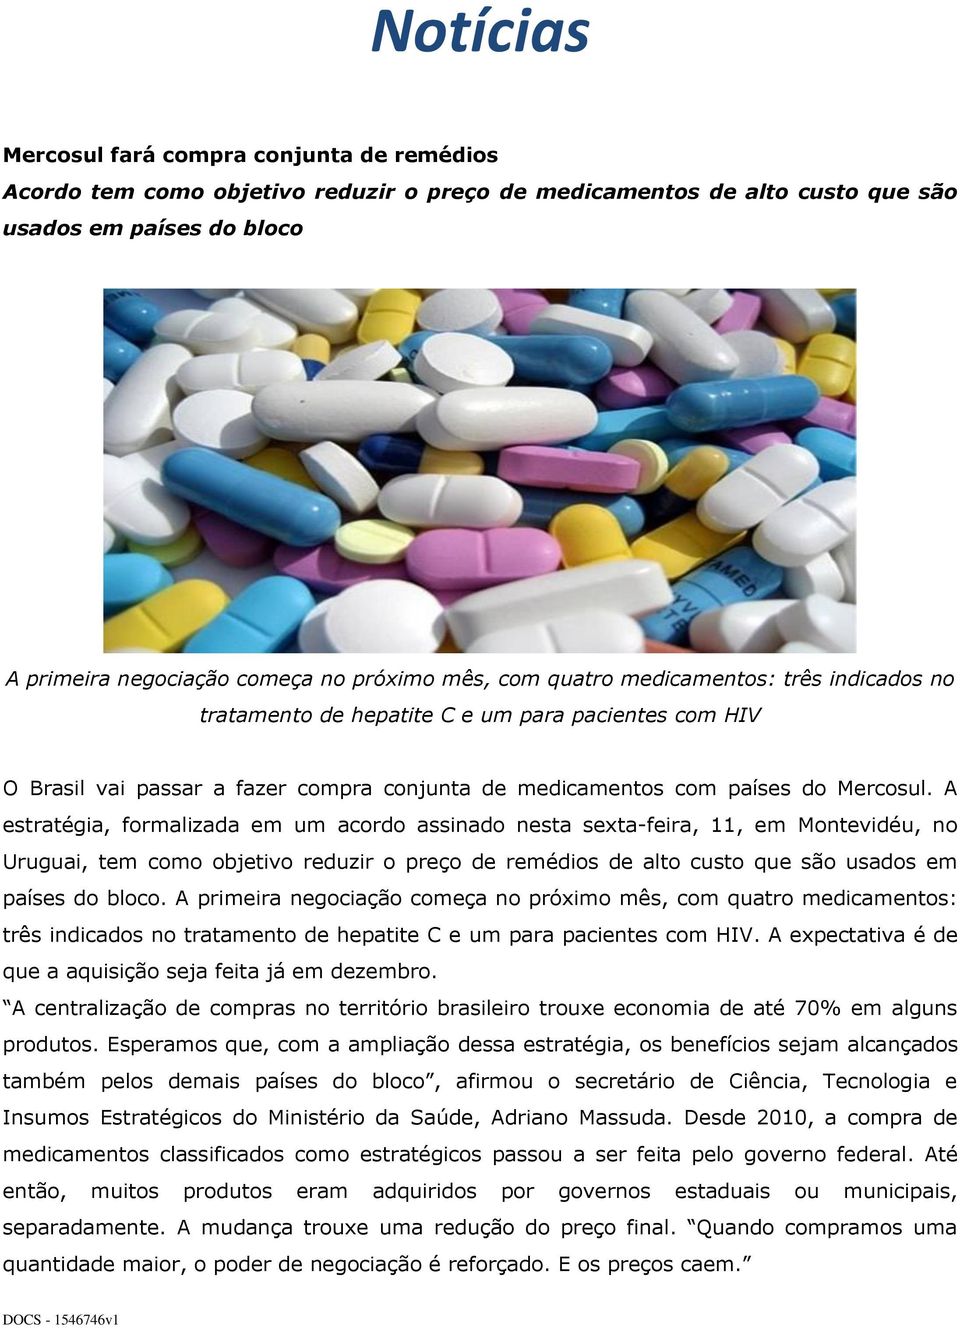 A estratégia, formalizada em um acordo assinado nesta sexta-feira, 11, em Montevidéu, no Uruguai, tem como objetivo reduzir o preço de remédios de alto custo que são usados em países do bloco.